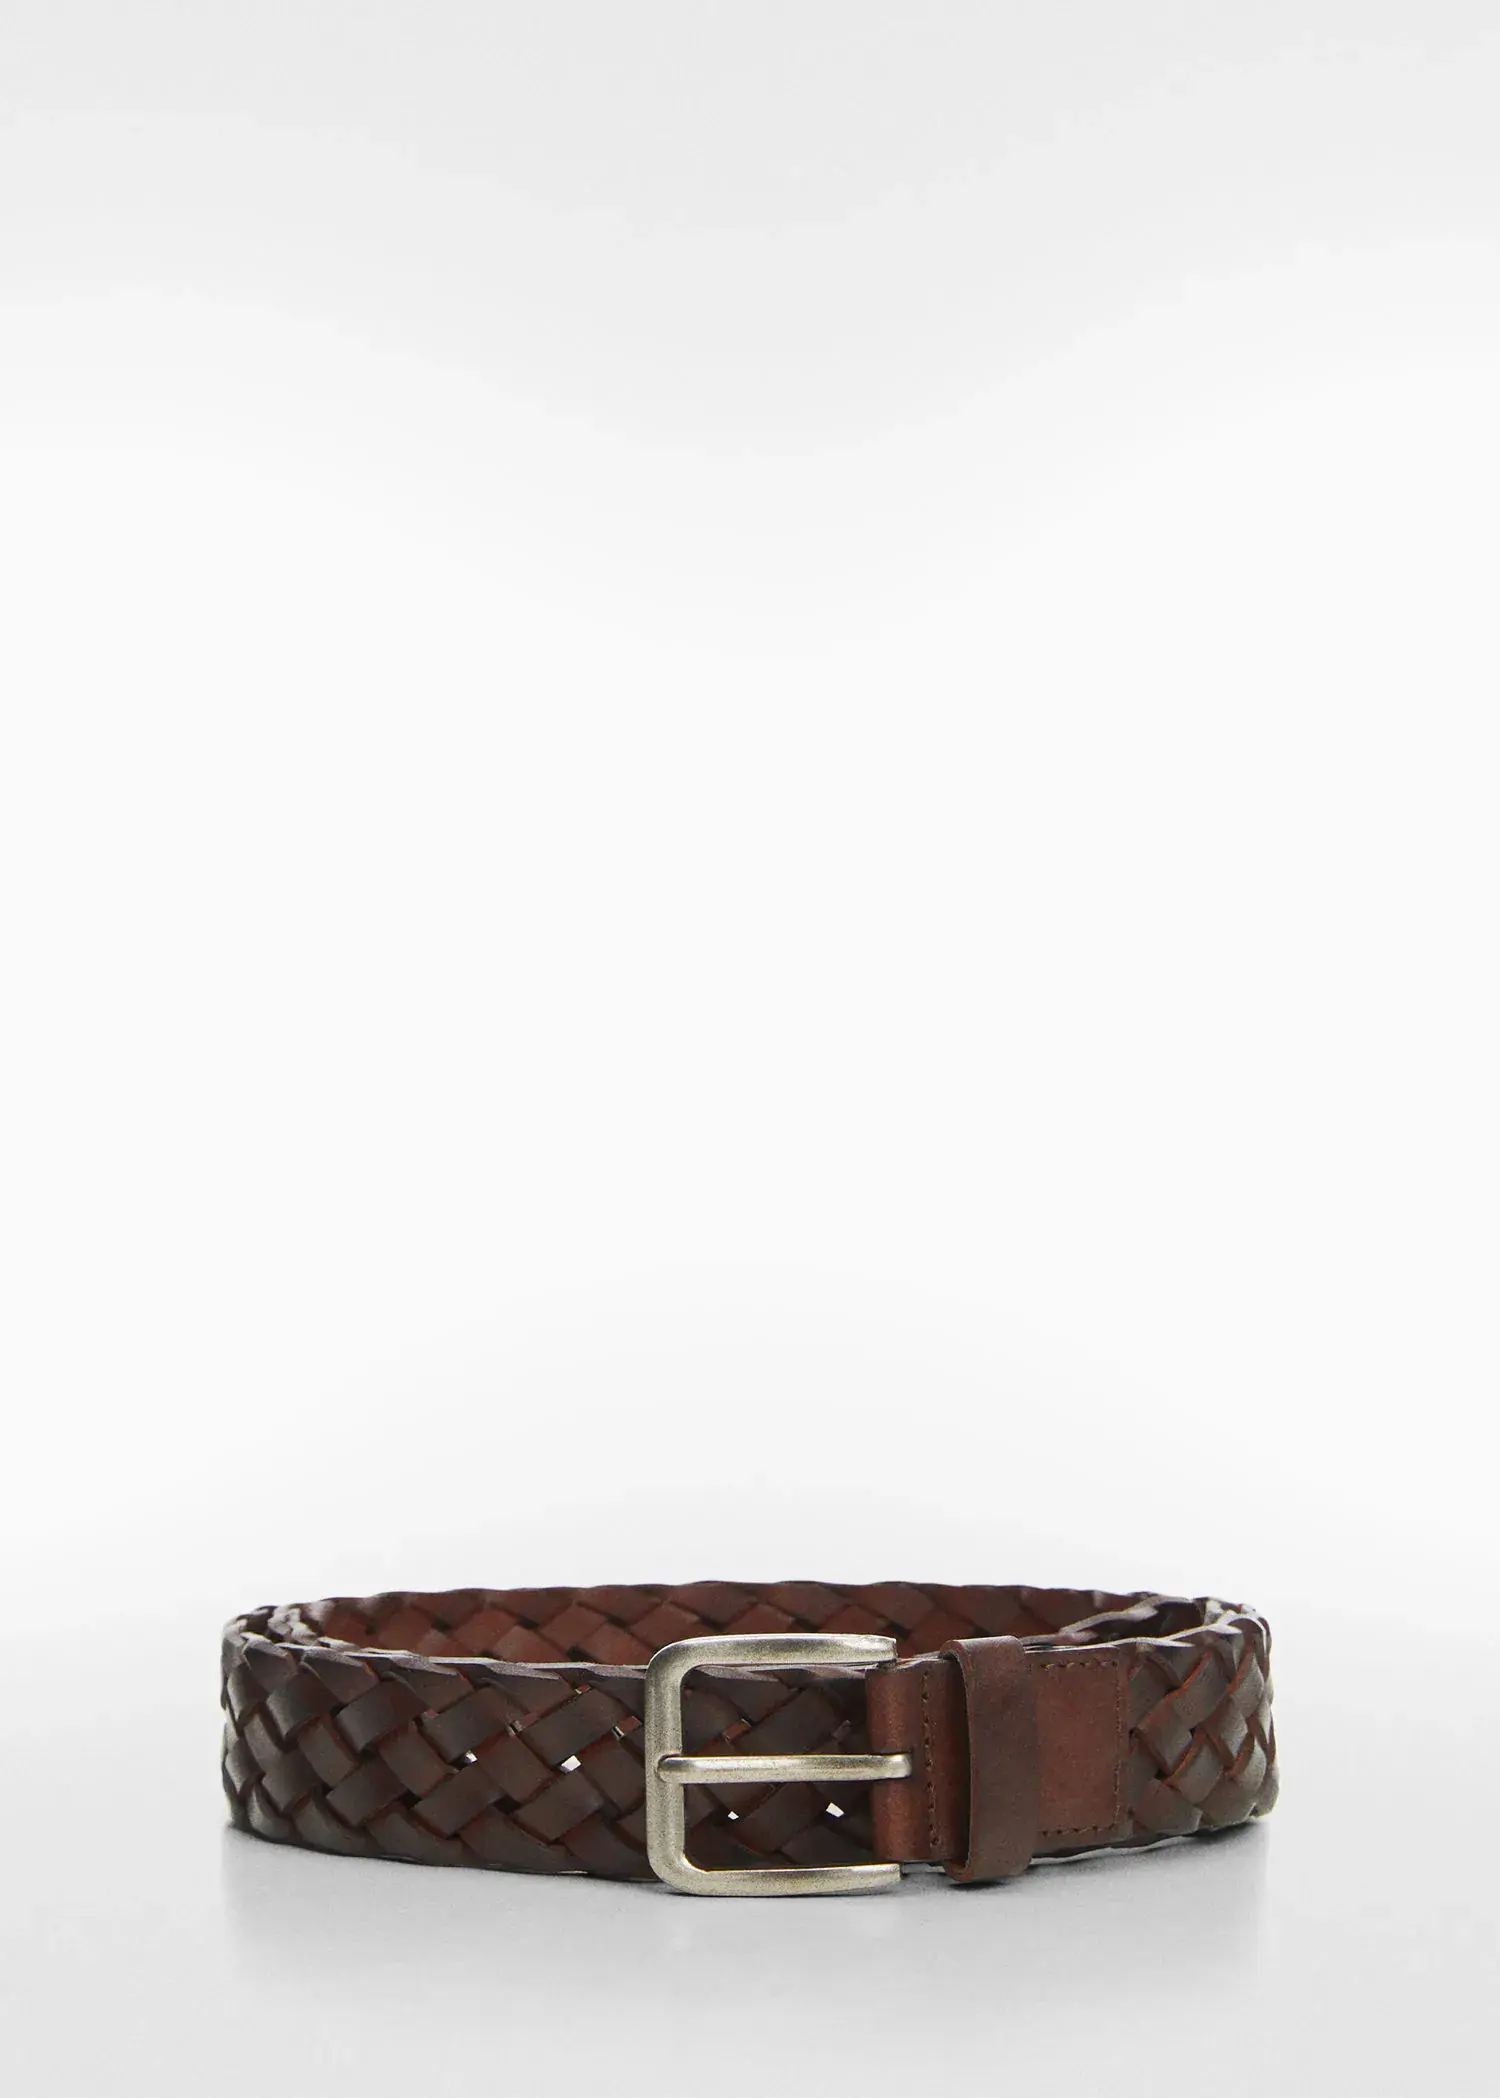 Mango Braided leather belt. 1